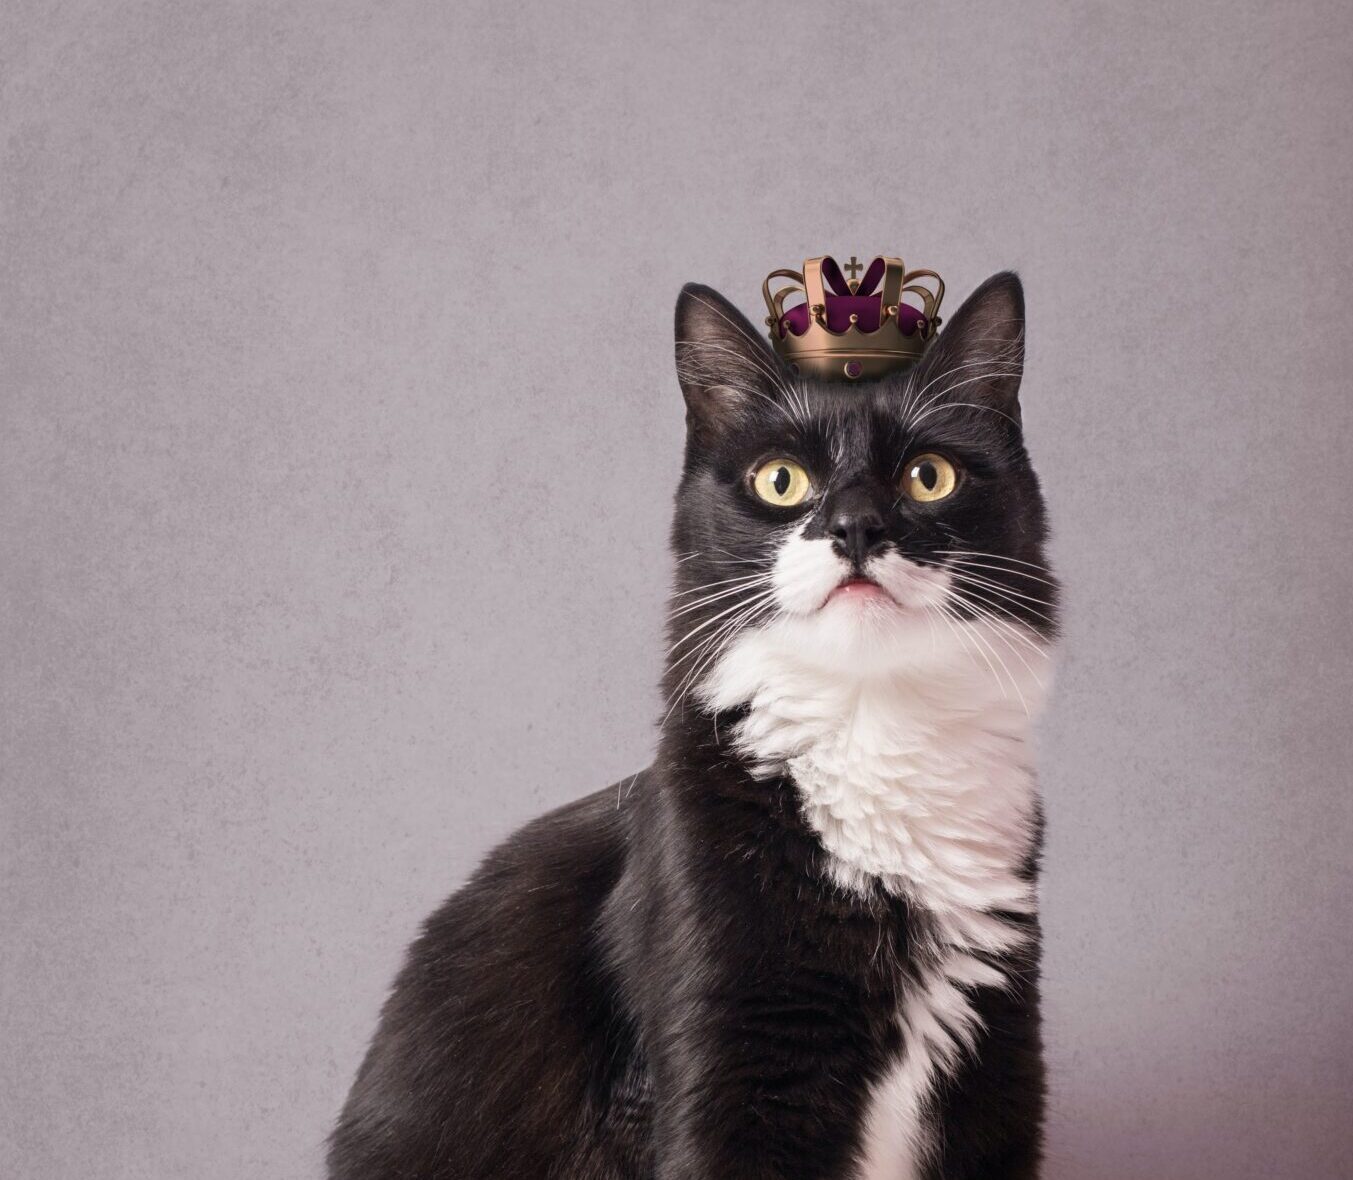 cat wearing a little crown